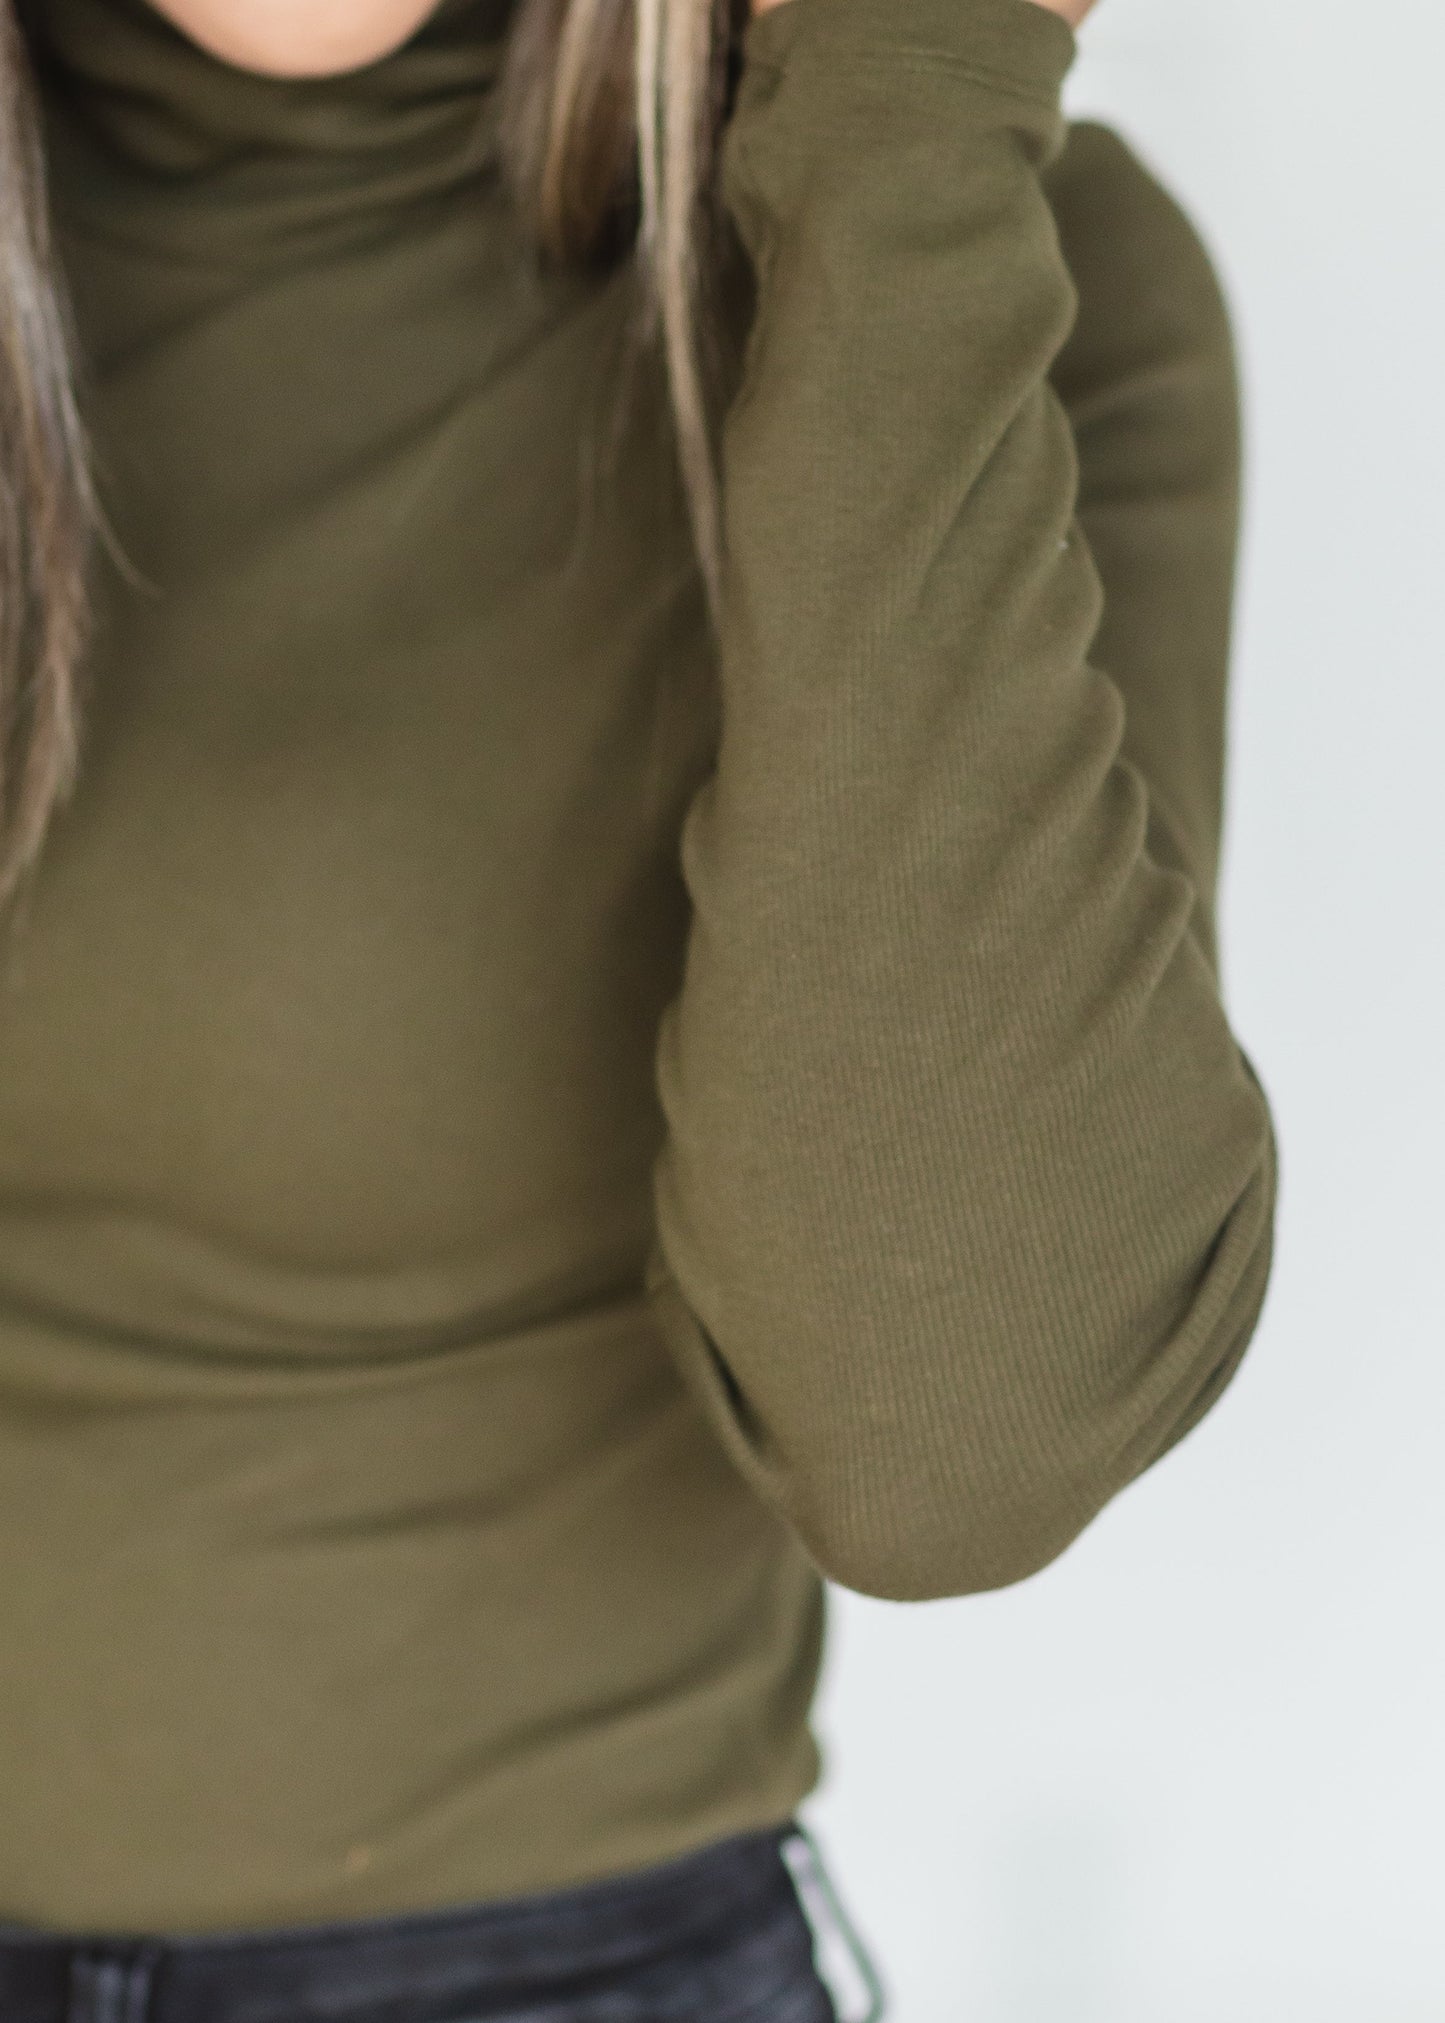 Olive Long Sleeve Turtleneck Sweater Shirt